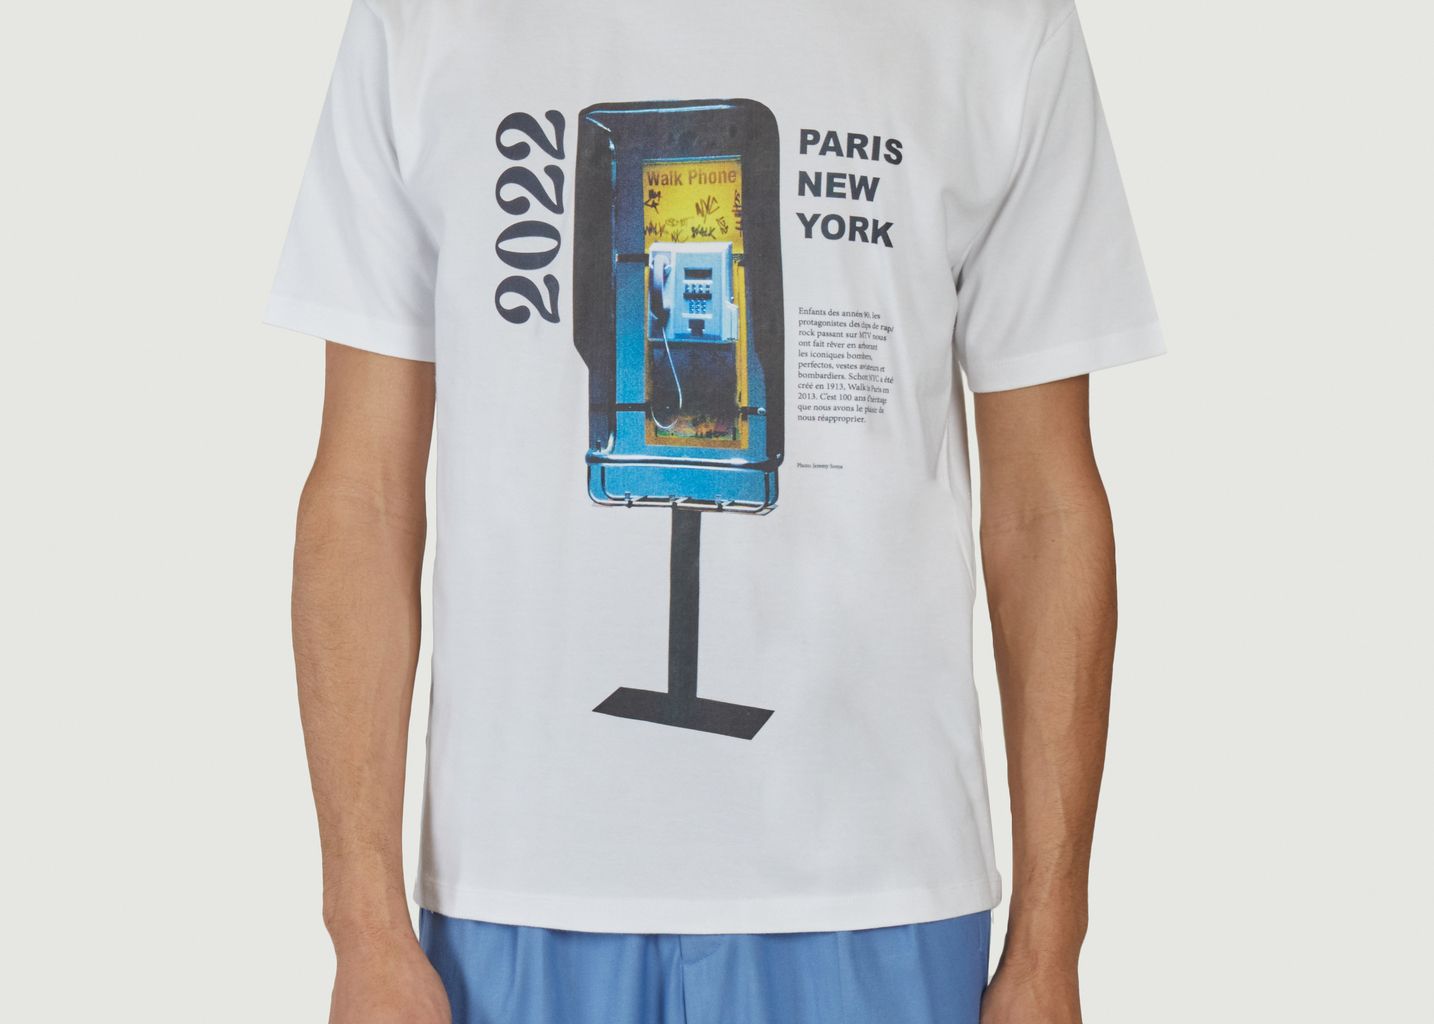 The Paris New York printed heritage t-shirt - Walk in Paris